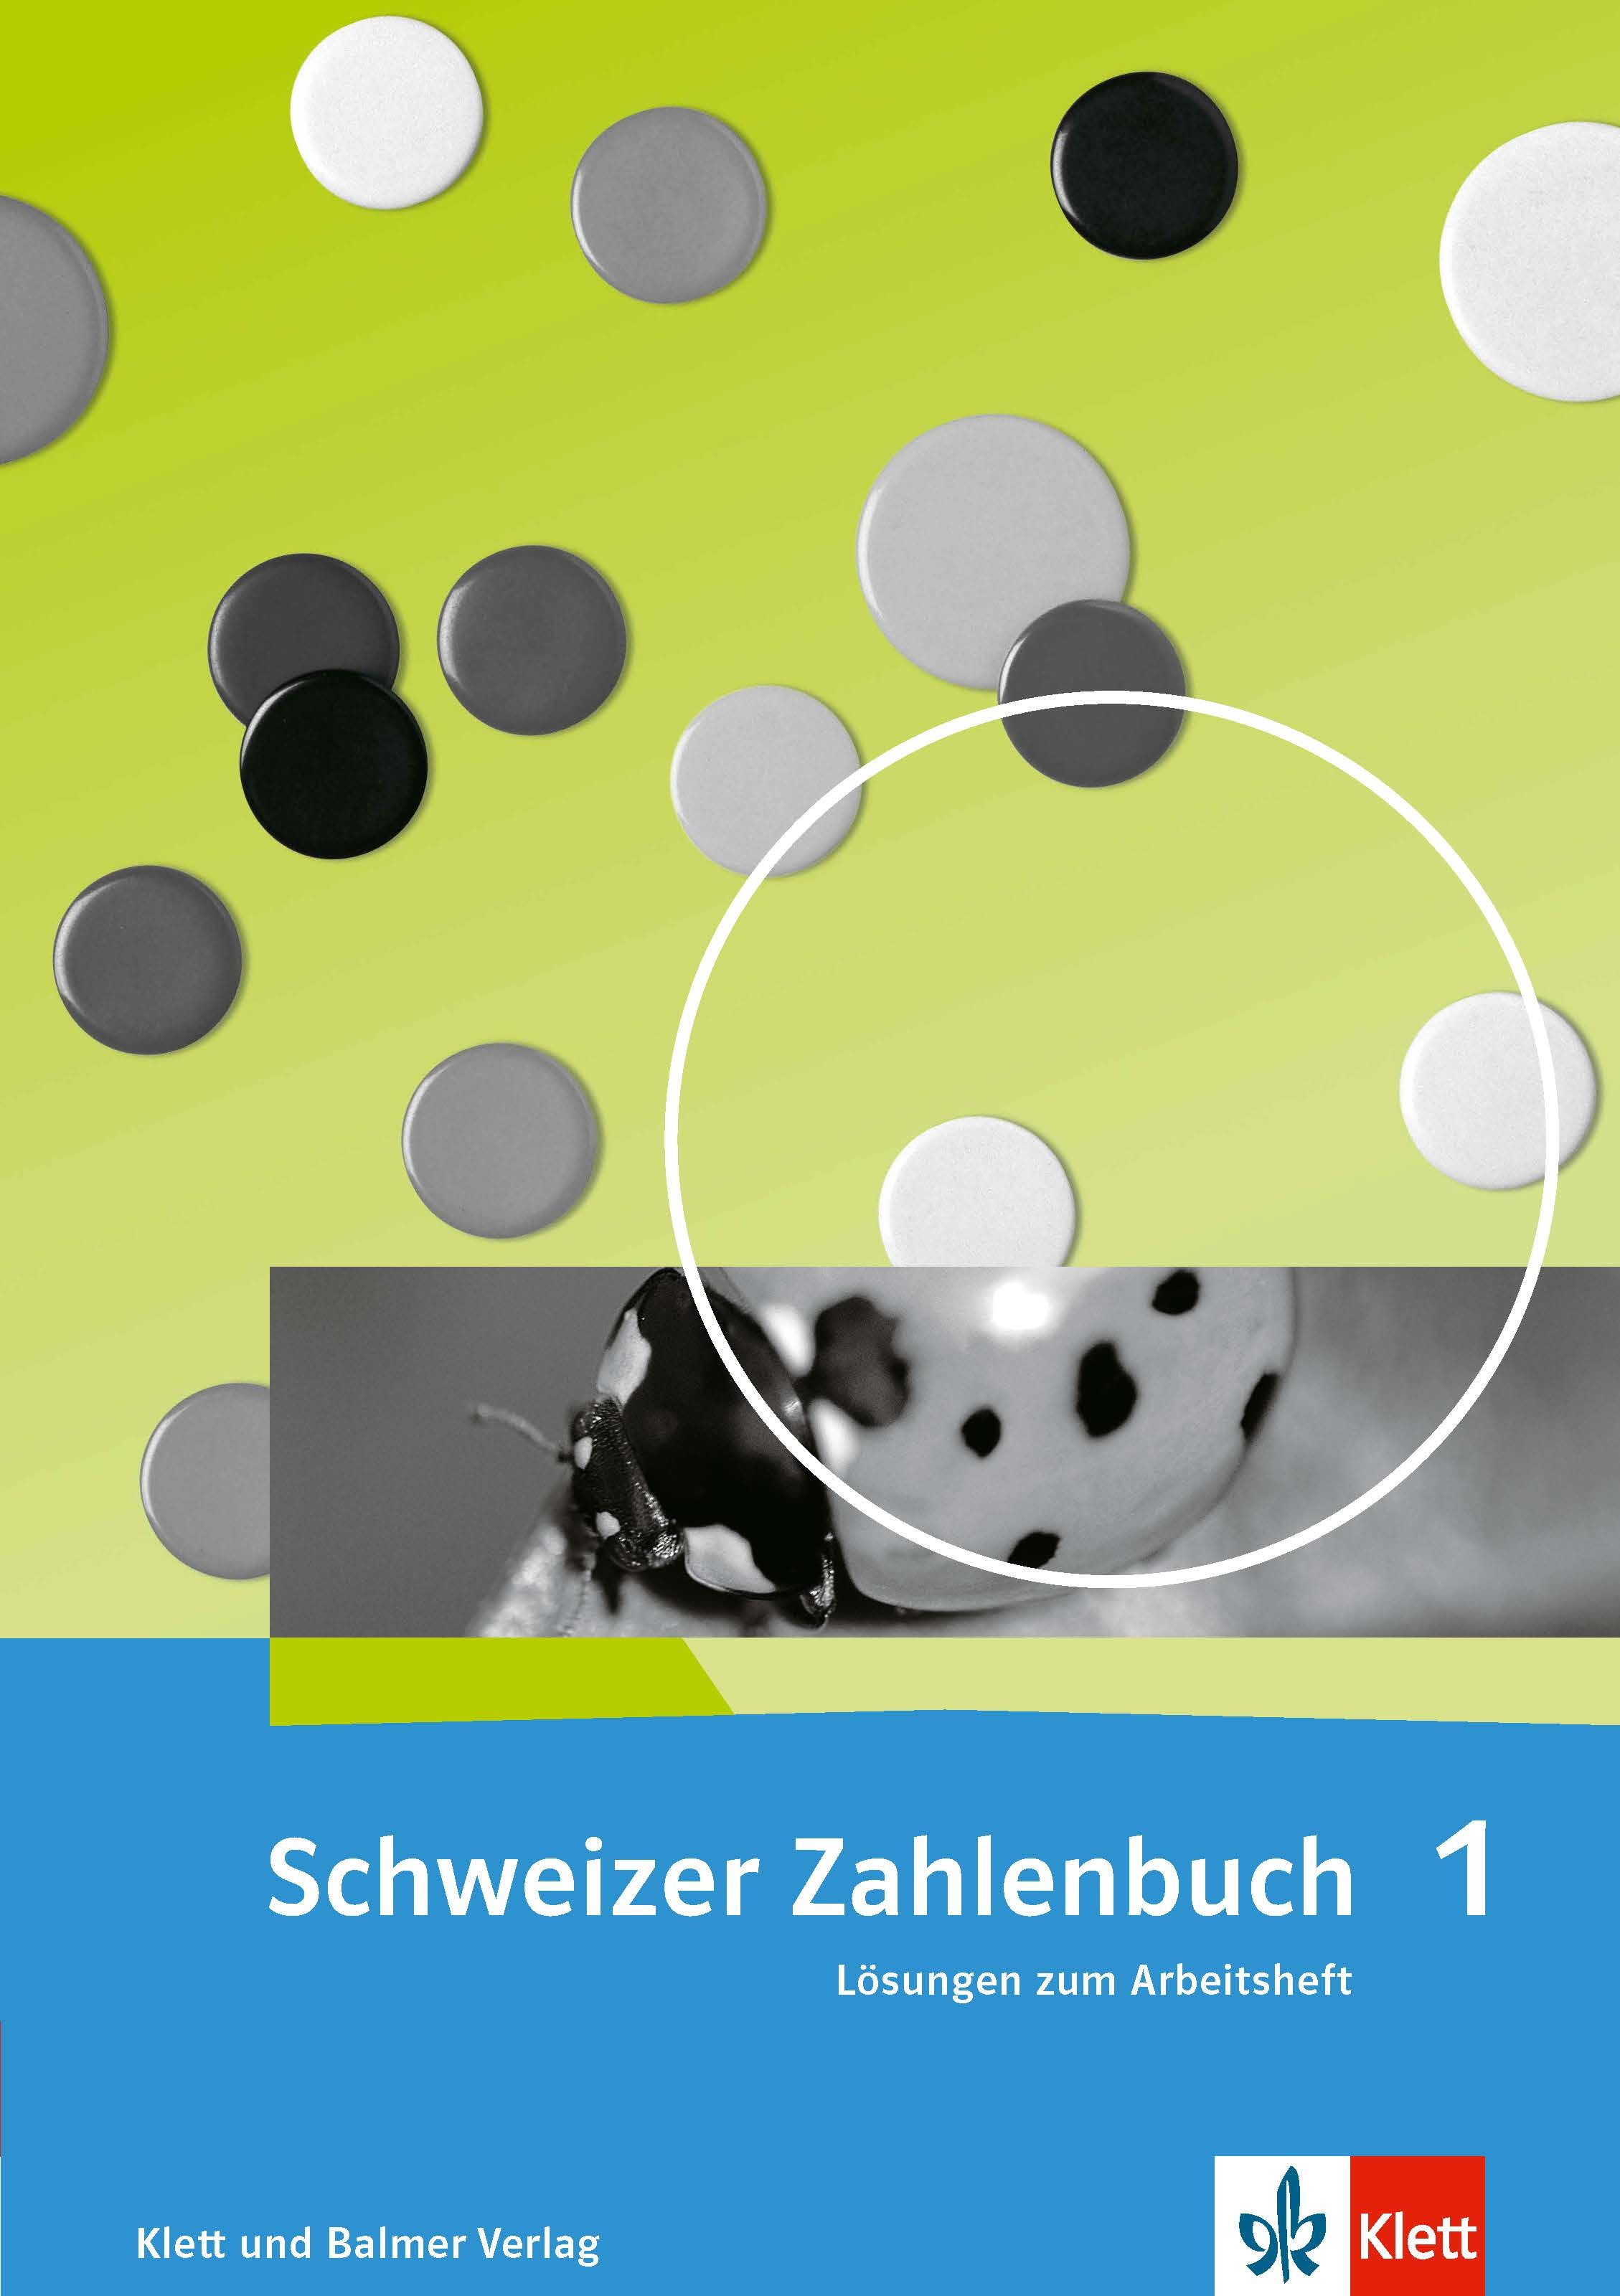 Schweizer Zahlenbuch 1 Lösungen zum Arbeitsheft 978 3 264 84702 4 klett und balmer